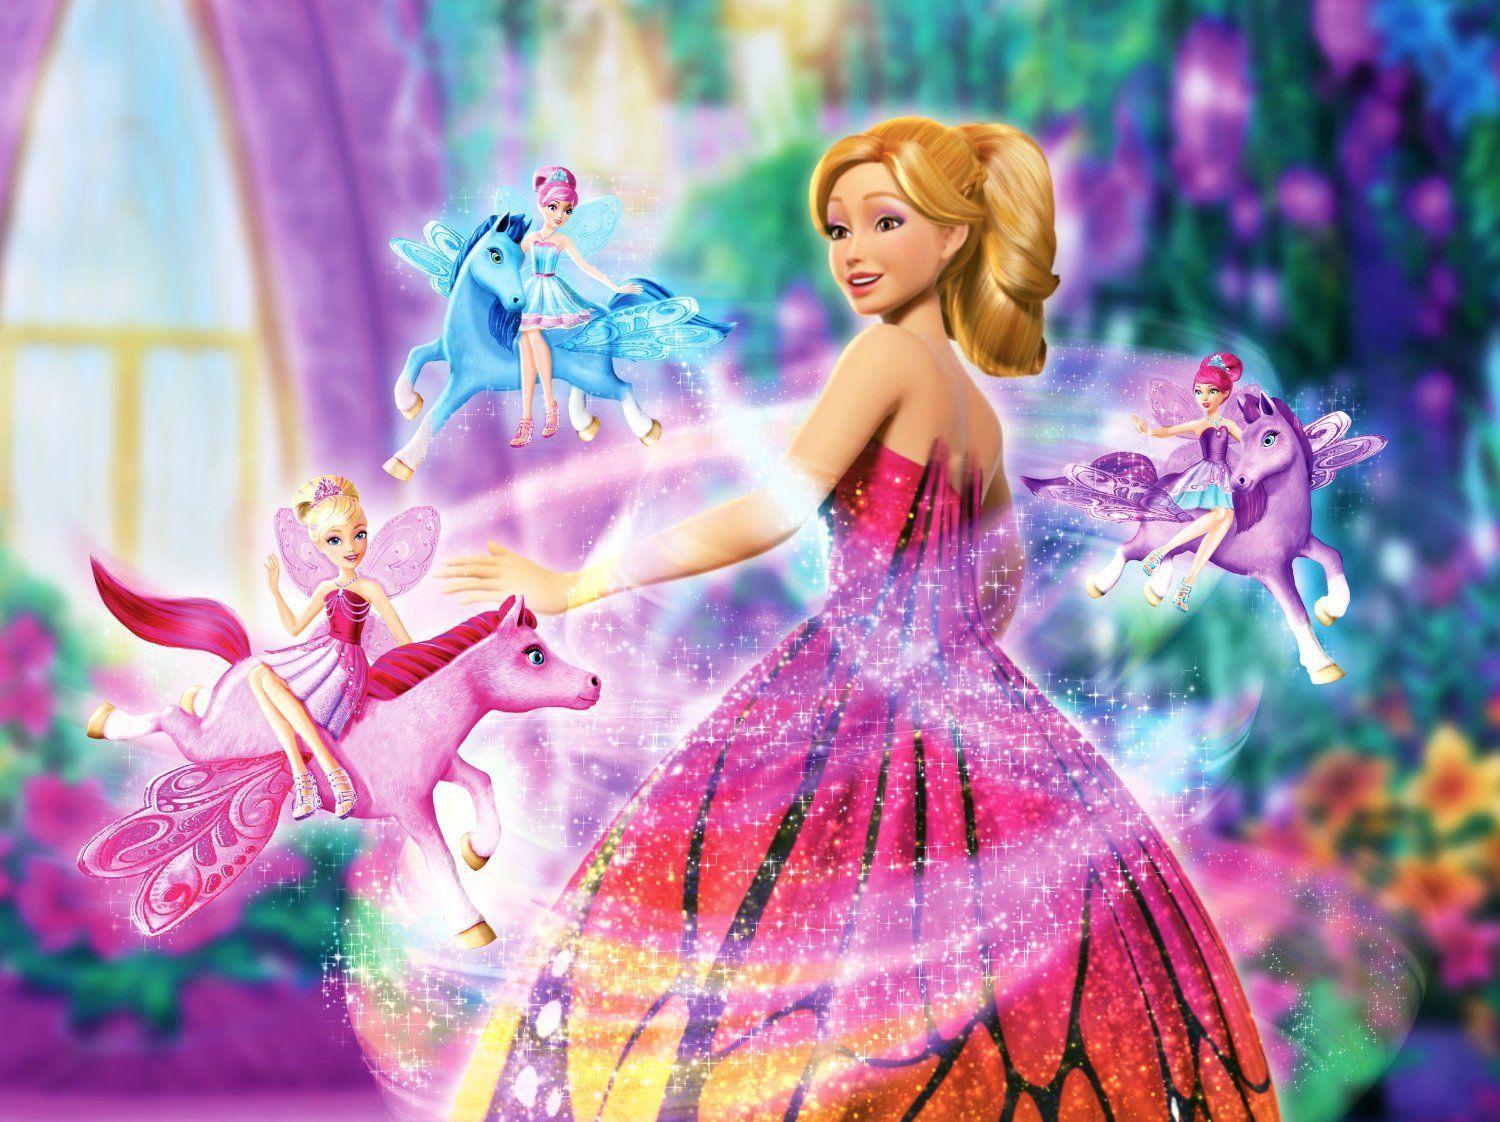 Barbie Princess Wallpapers - Top Những Hình Ảnh Đẹp